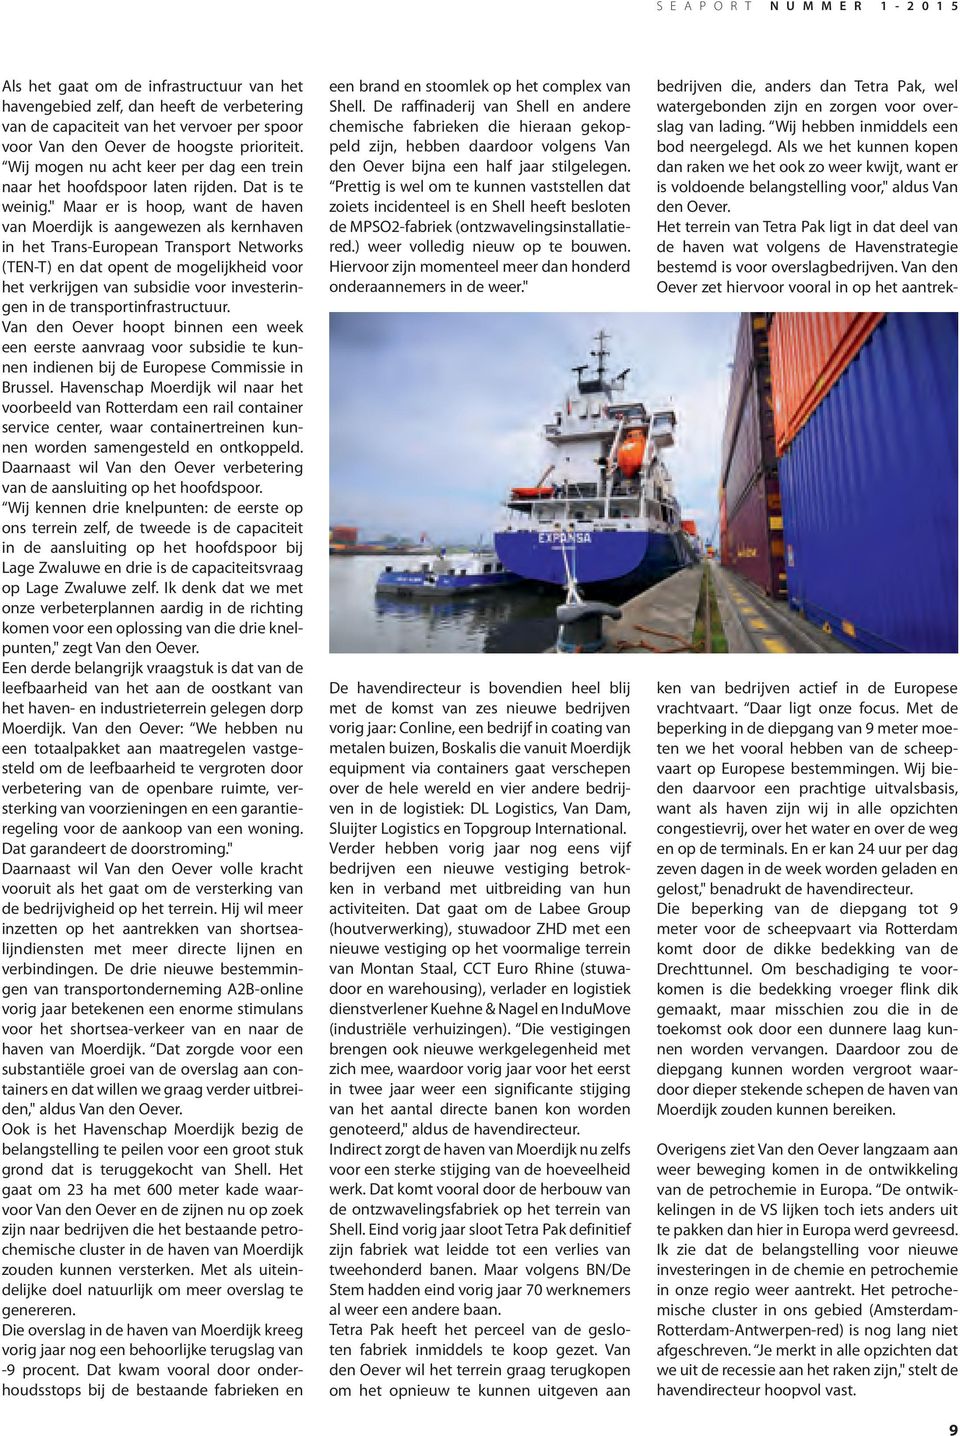 " Maar er is hoop, want de haven van Moerdijk is aangewezen als kernhaven in het Trans-European Transport Networks (TEN-T) en dat opent de mogelijkheid voor het verkrijgen van subsidie voor